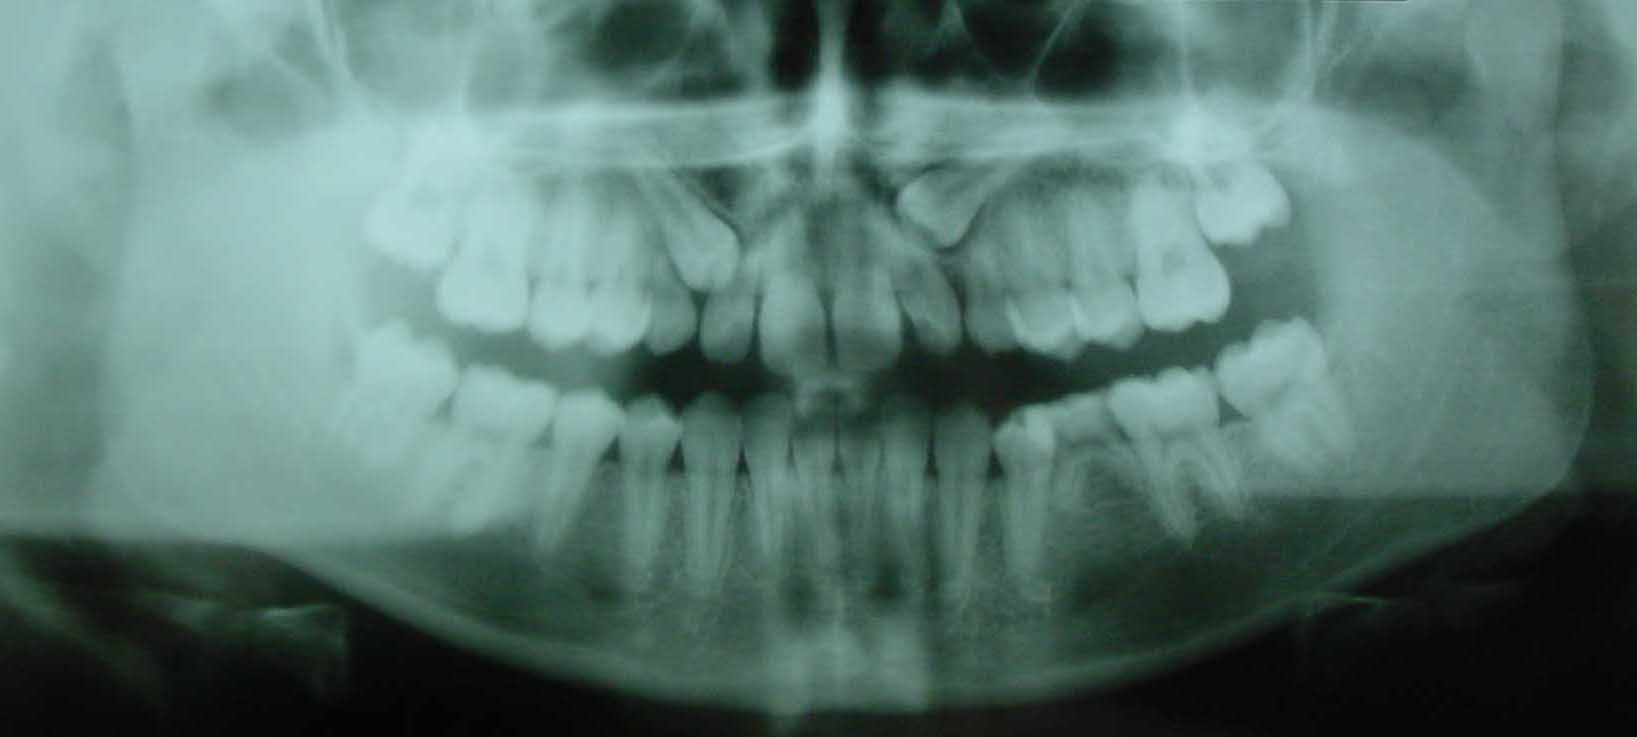 Verlagerung der oberen Eckzähne und Nichtanlage eines kleinen Backenzahnes (Zahn 35)